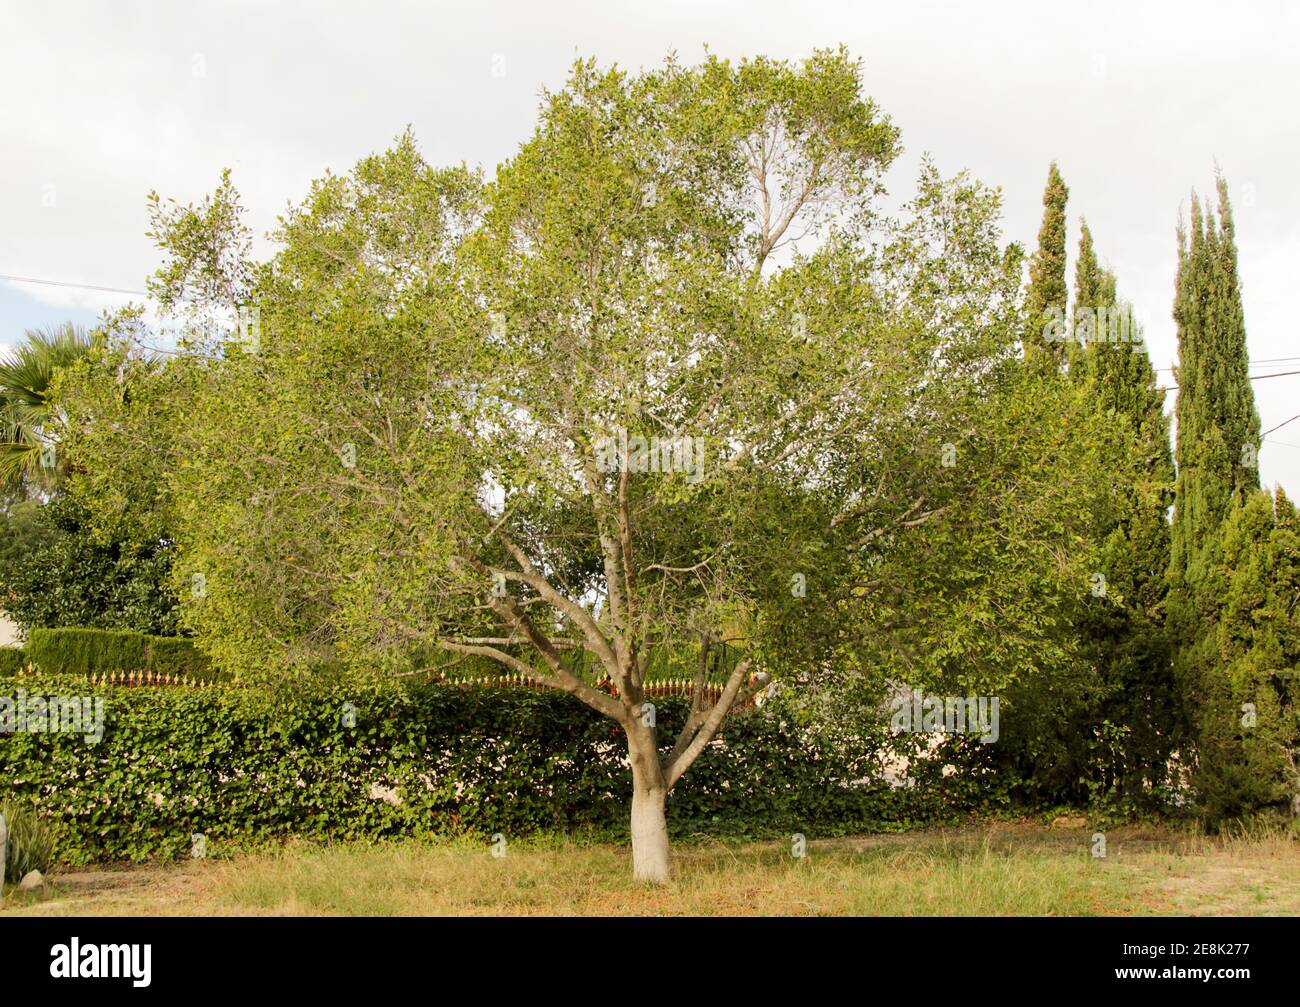 Schöner Ficus benjamina Baum im Garten in Spanien Stockfotografie - Alamy